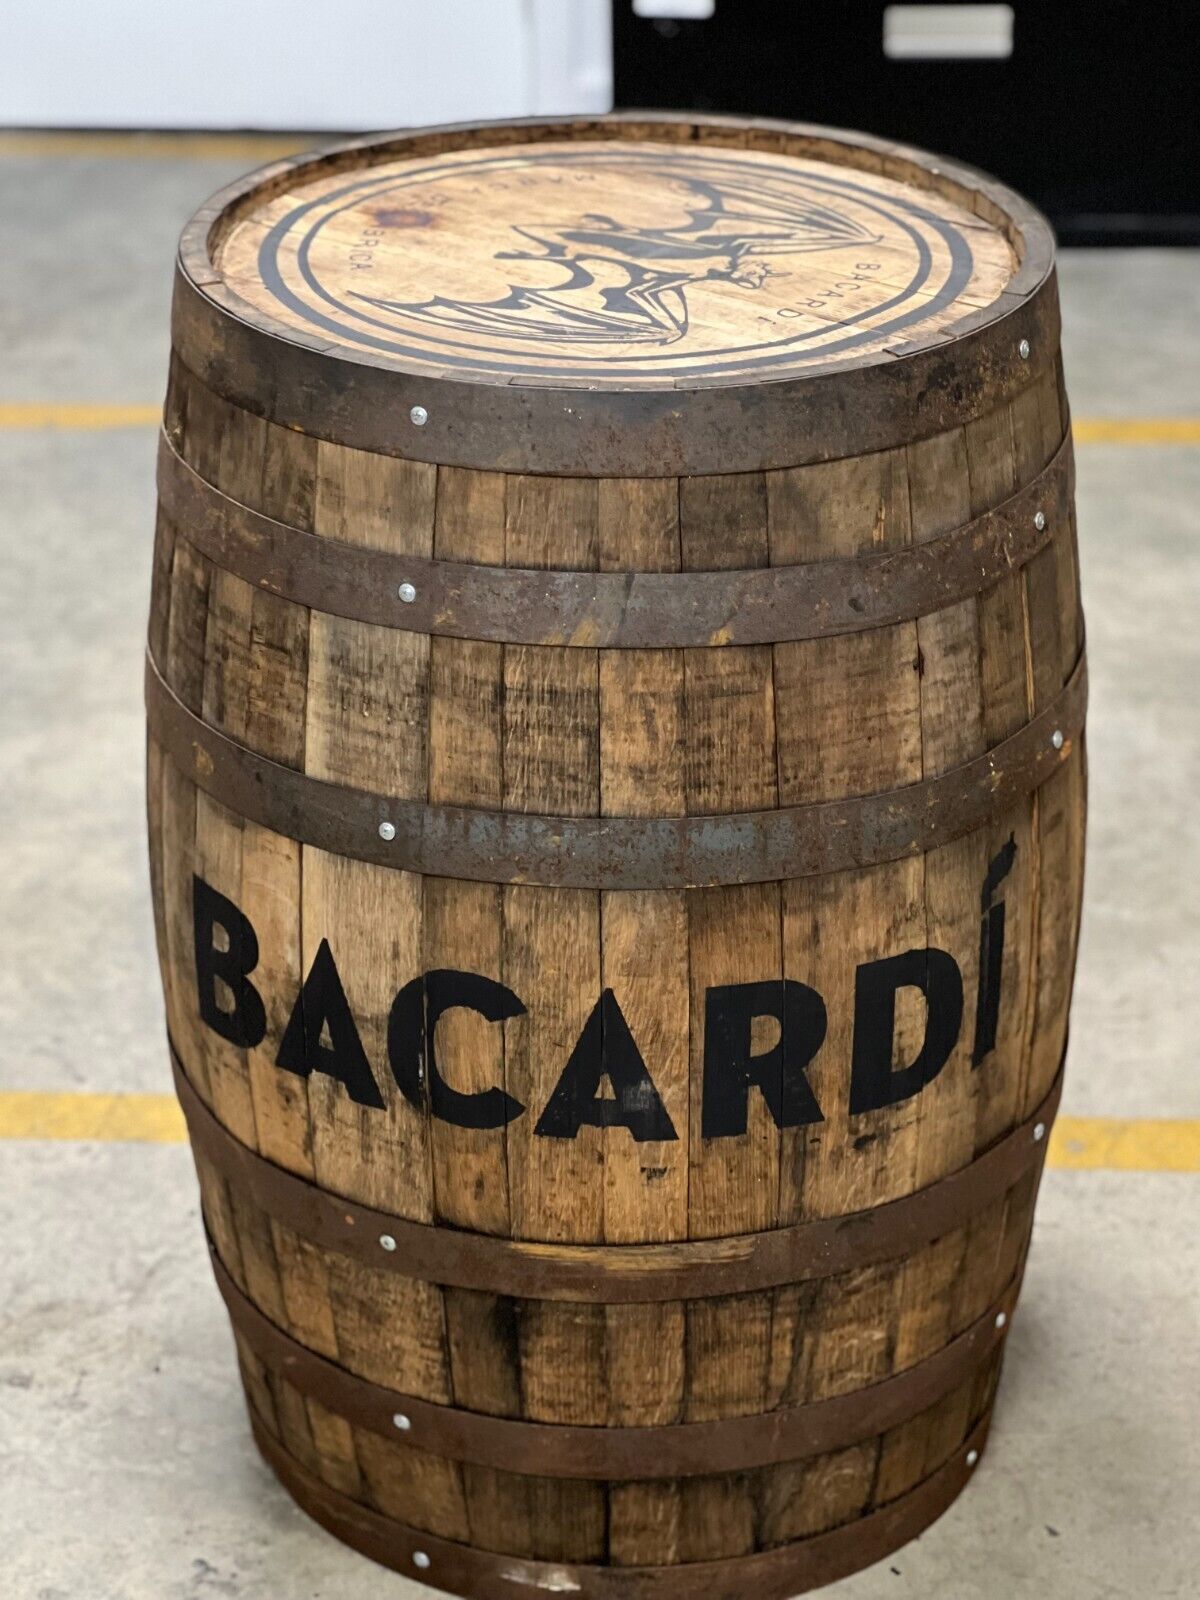 Original Bacardi Rum Barrel